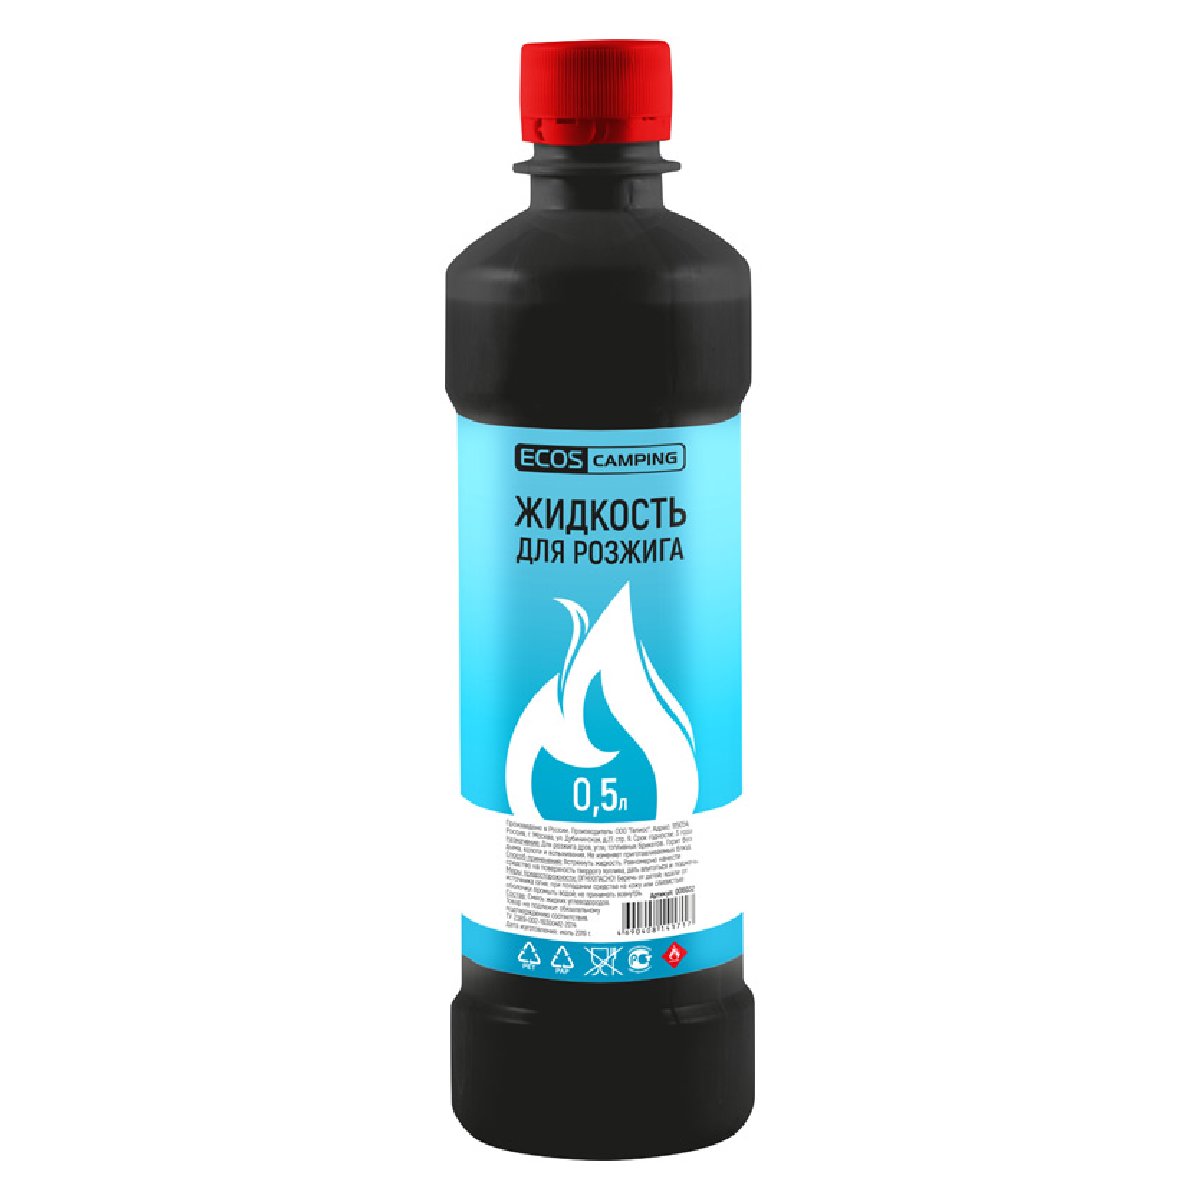 Жидкость для розжига Ecos 0,5л (006032)Купить